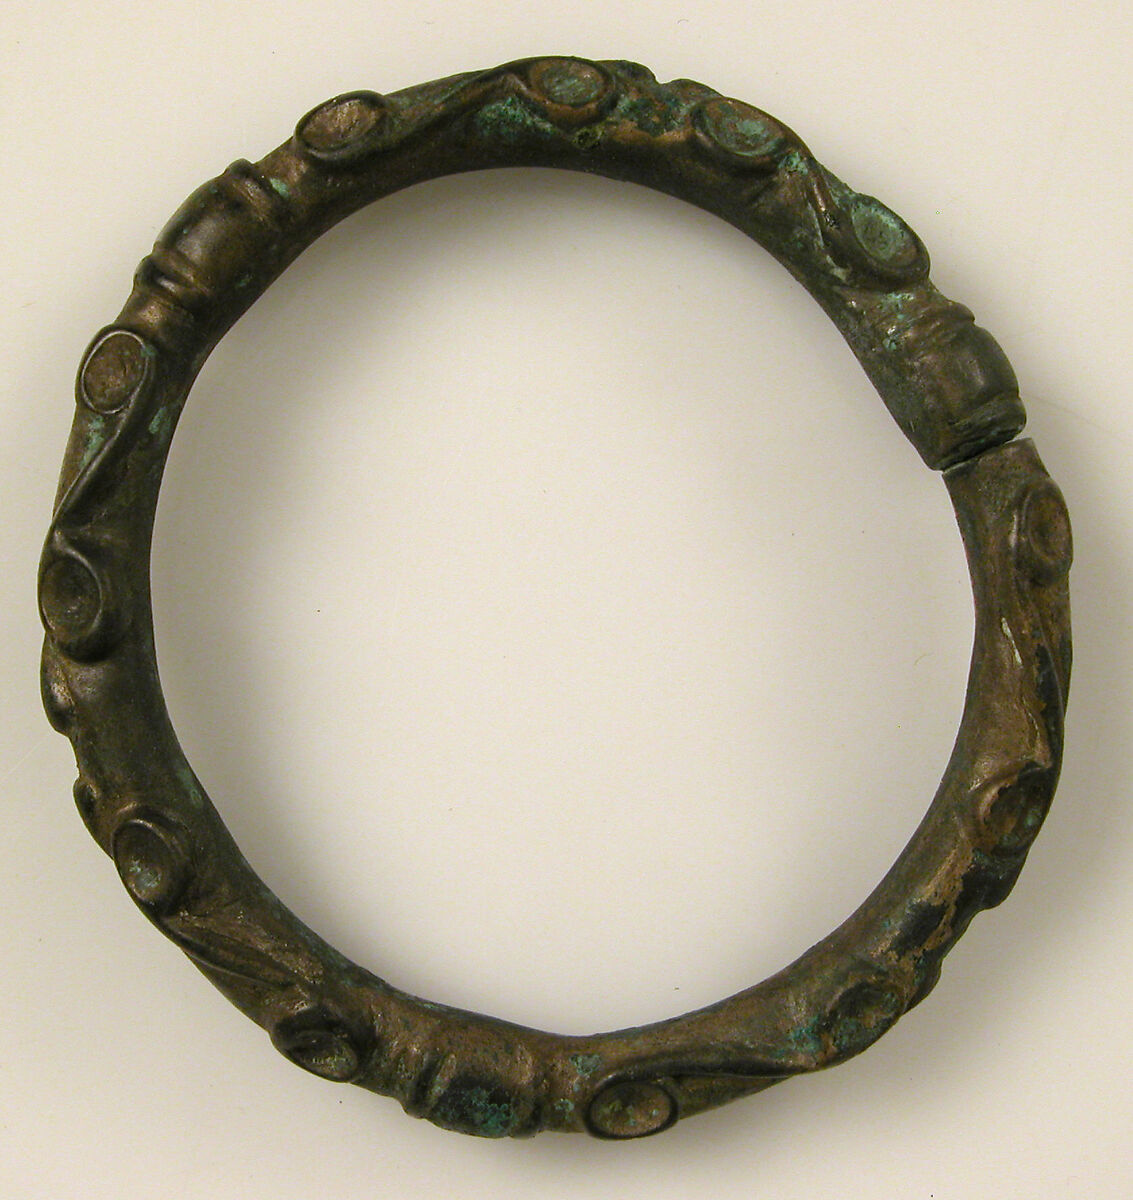 Bracelet with Spiral Designs, Copper alloy, Celtic 